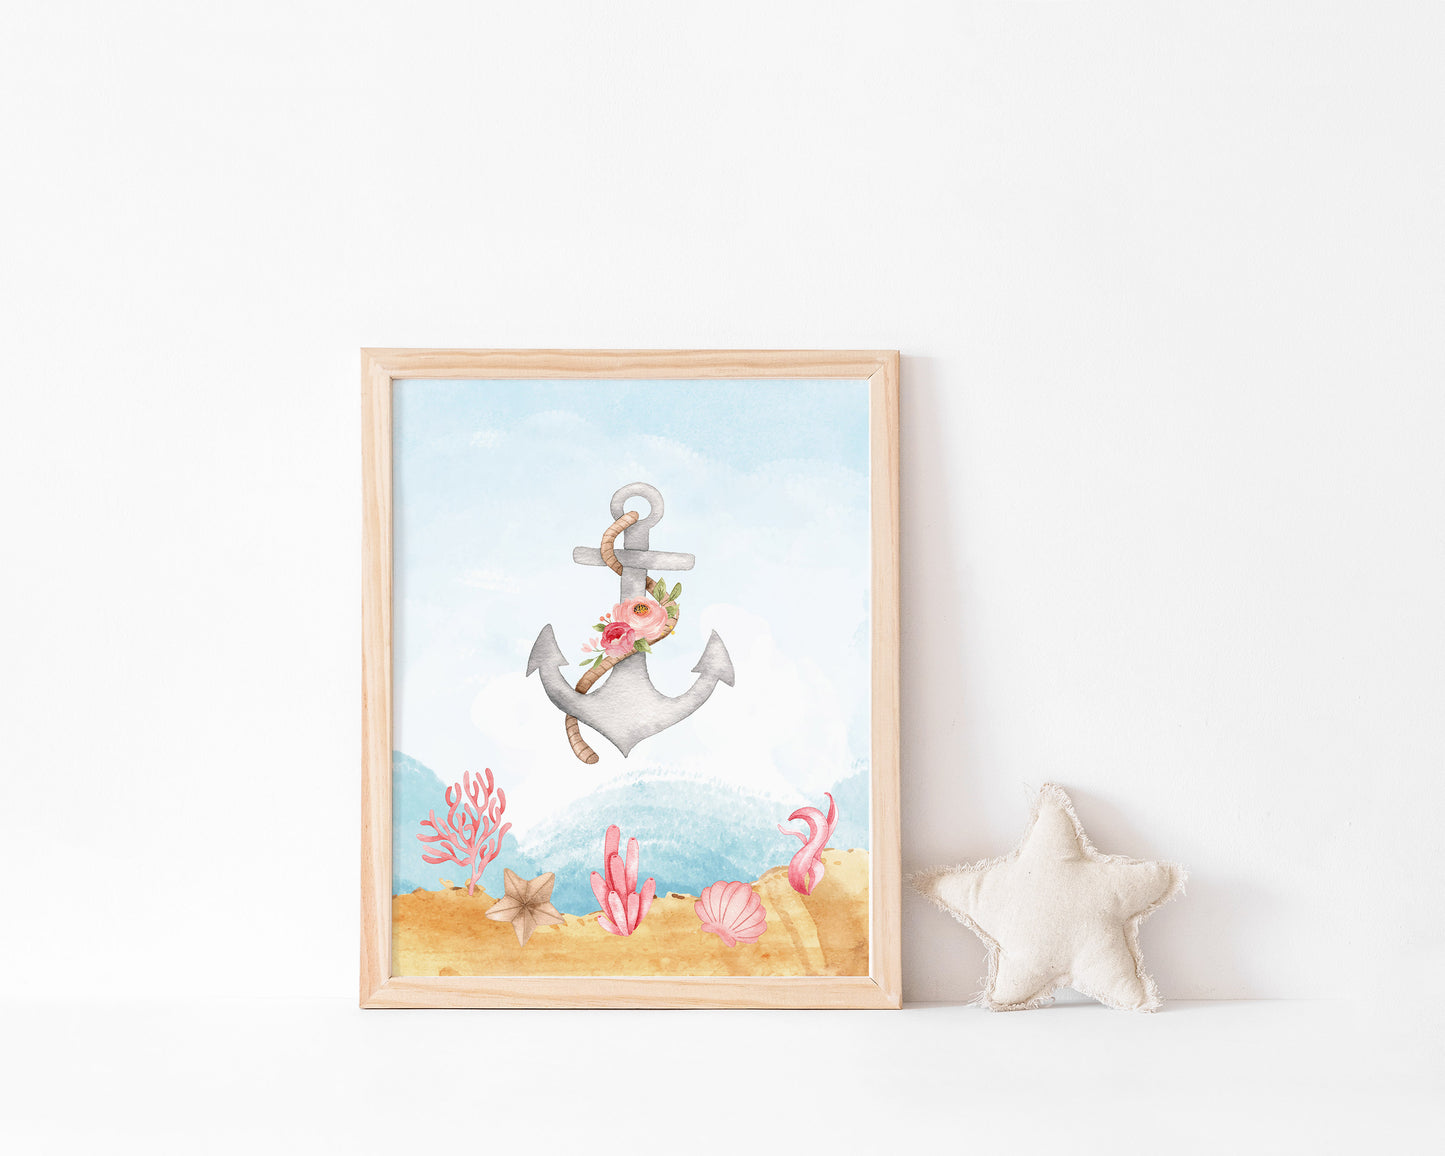 Mermaid Wall Art, Girl Under The Sea Nursery Prints - Set of 4